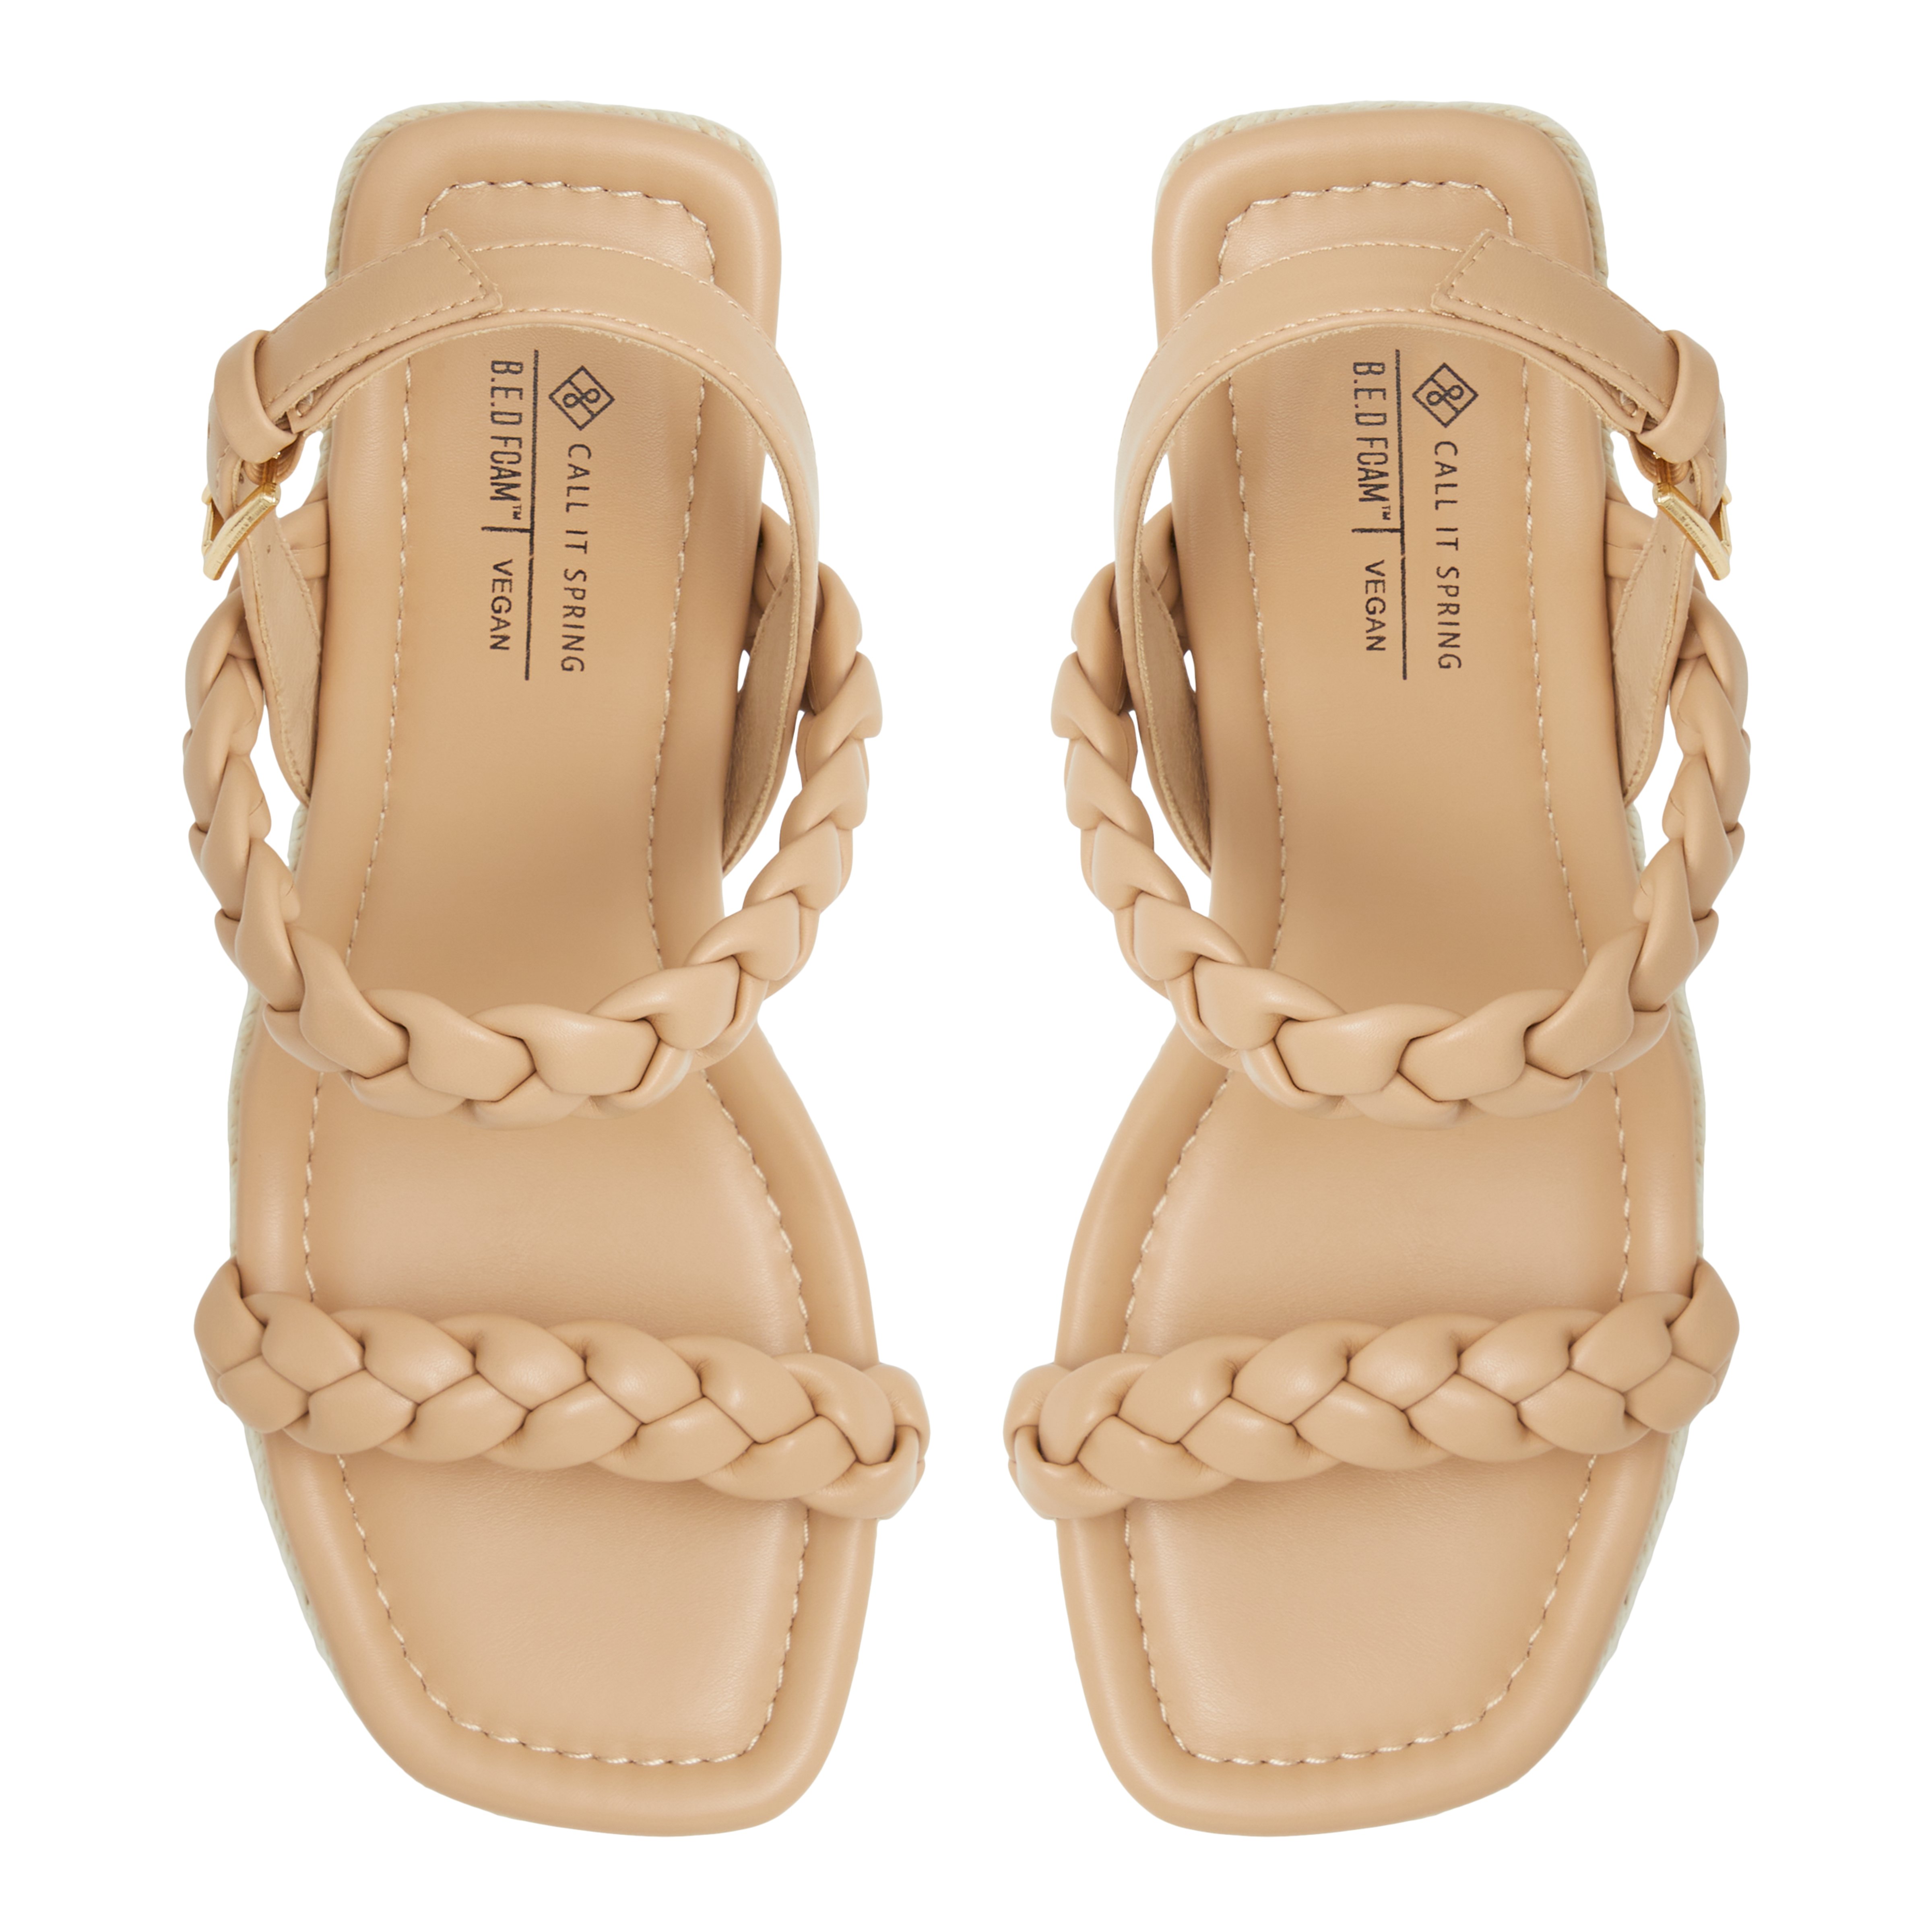 Siennah High heel chunky platform sandals - Wedge